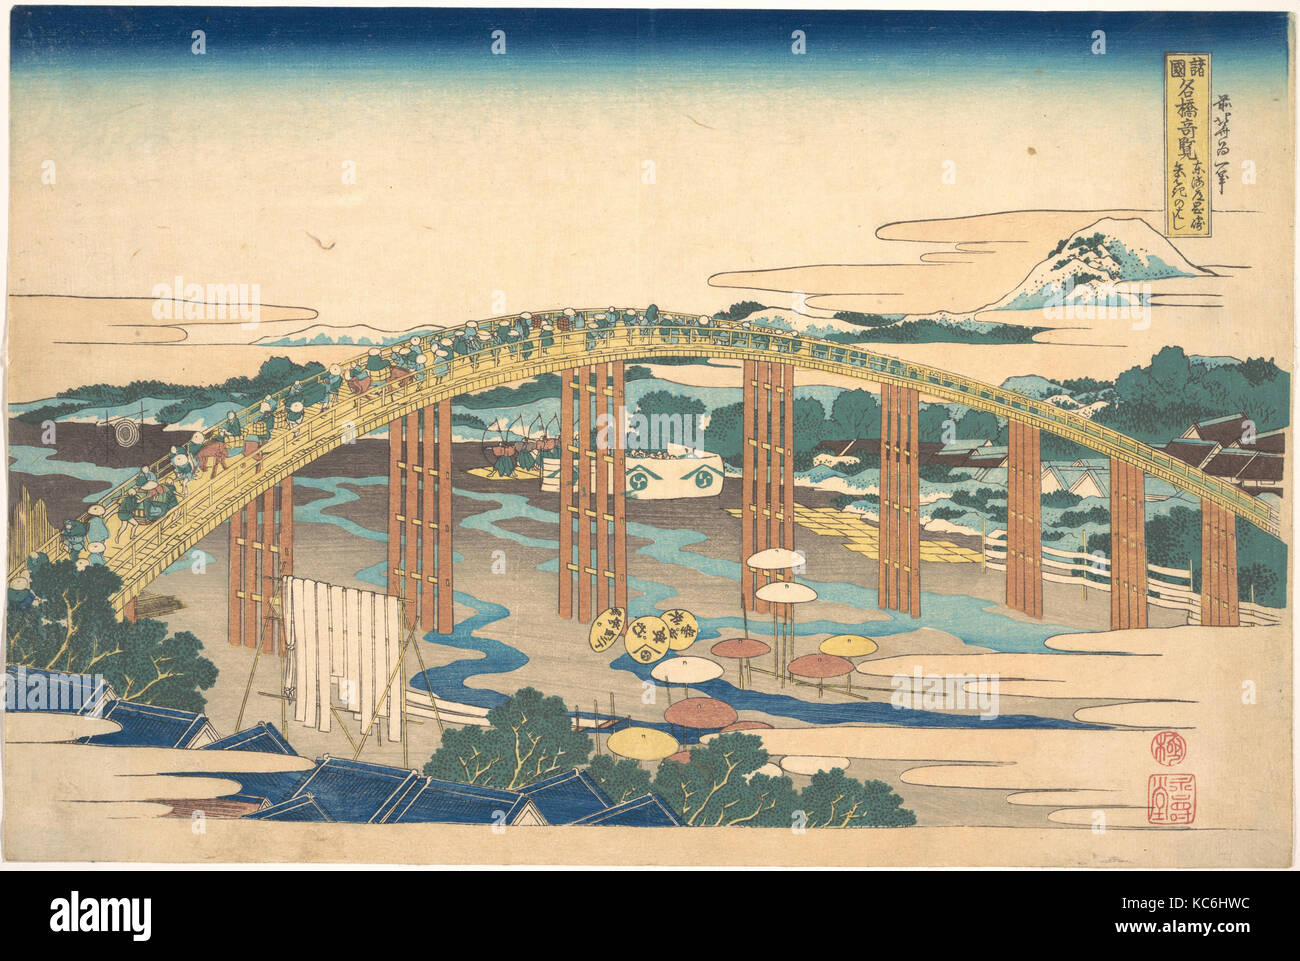 諸國名橋奇覧 東海道岡崎矢はぎのはし, Yahagi ponte di Okazaki sul Tōkaidō (Tōkaidō Okazaki Yahagi no hashi), dalla serie notevoli panorami Foto Stock